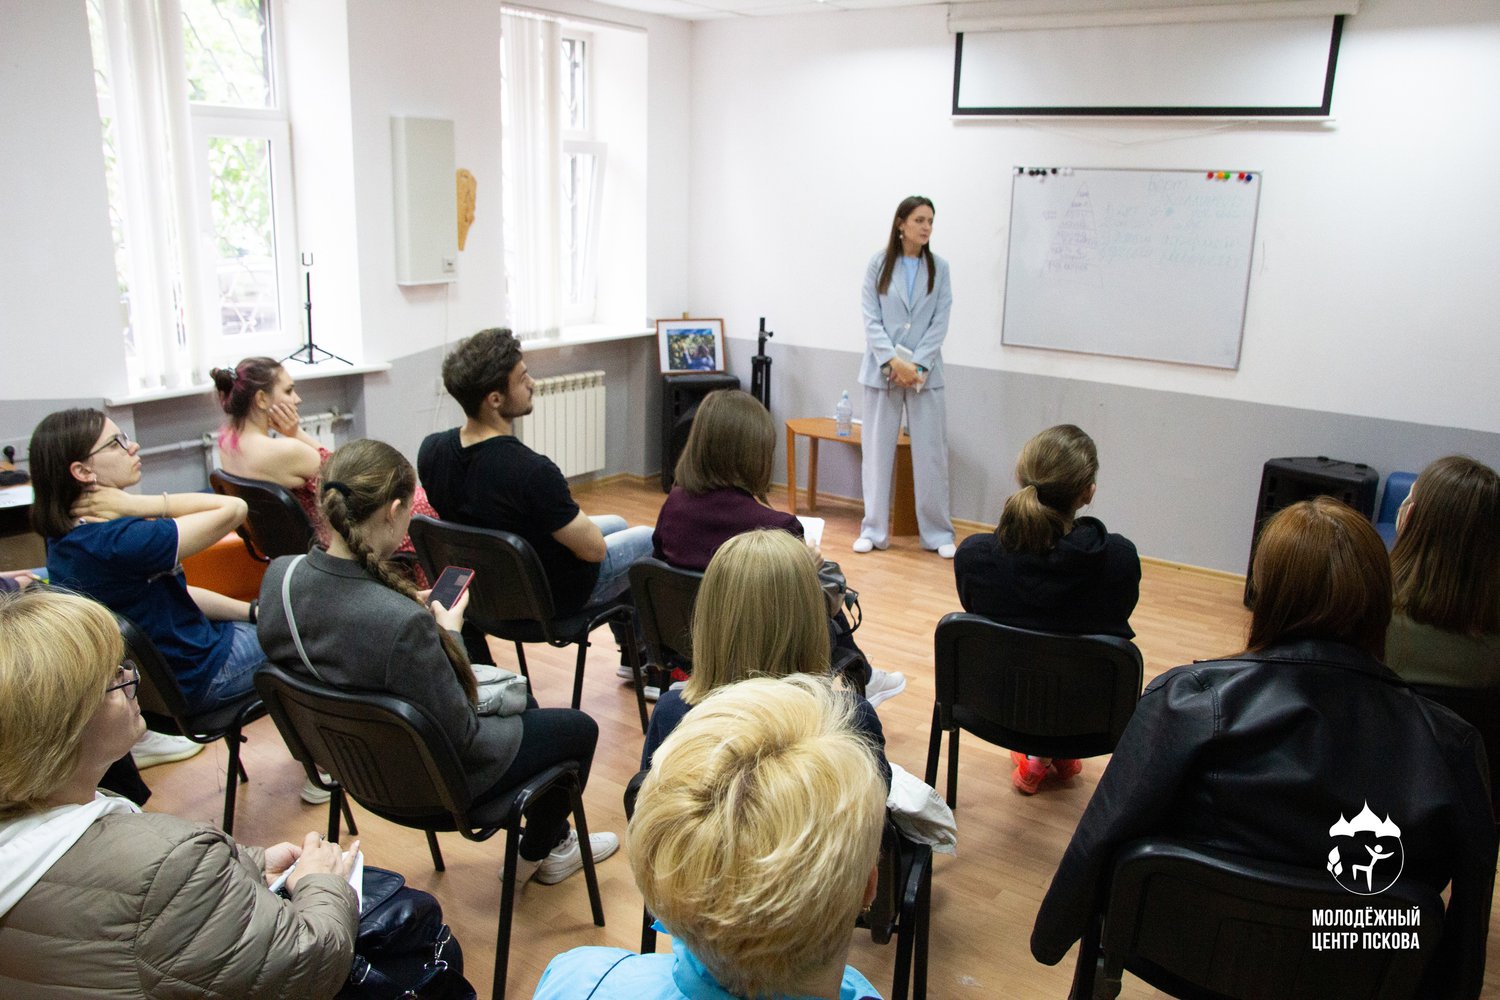 9 сентября в Псковском городском молодёжном центре после небольшого перерыва пройдёт шестая встреча психологического клуба на тему «Психосоматика».